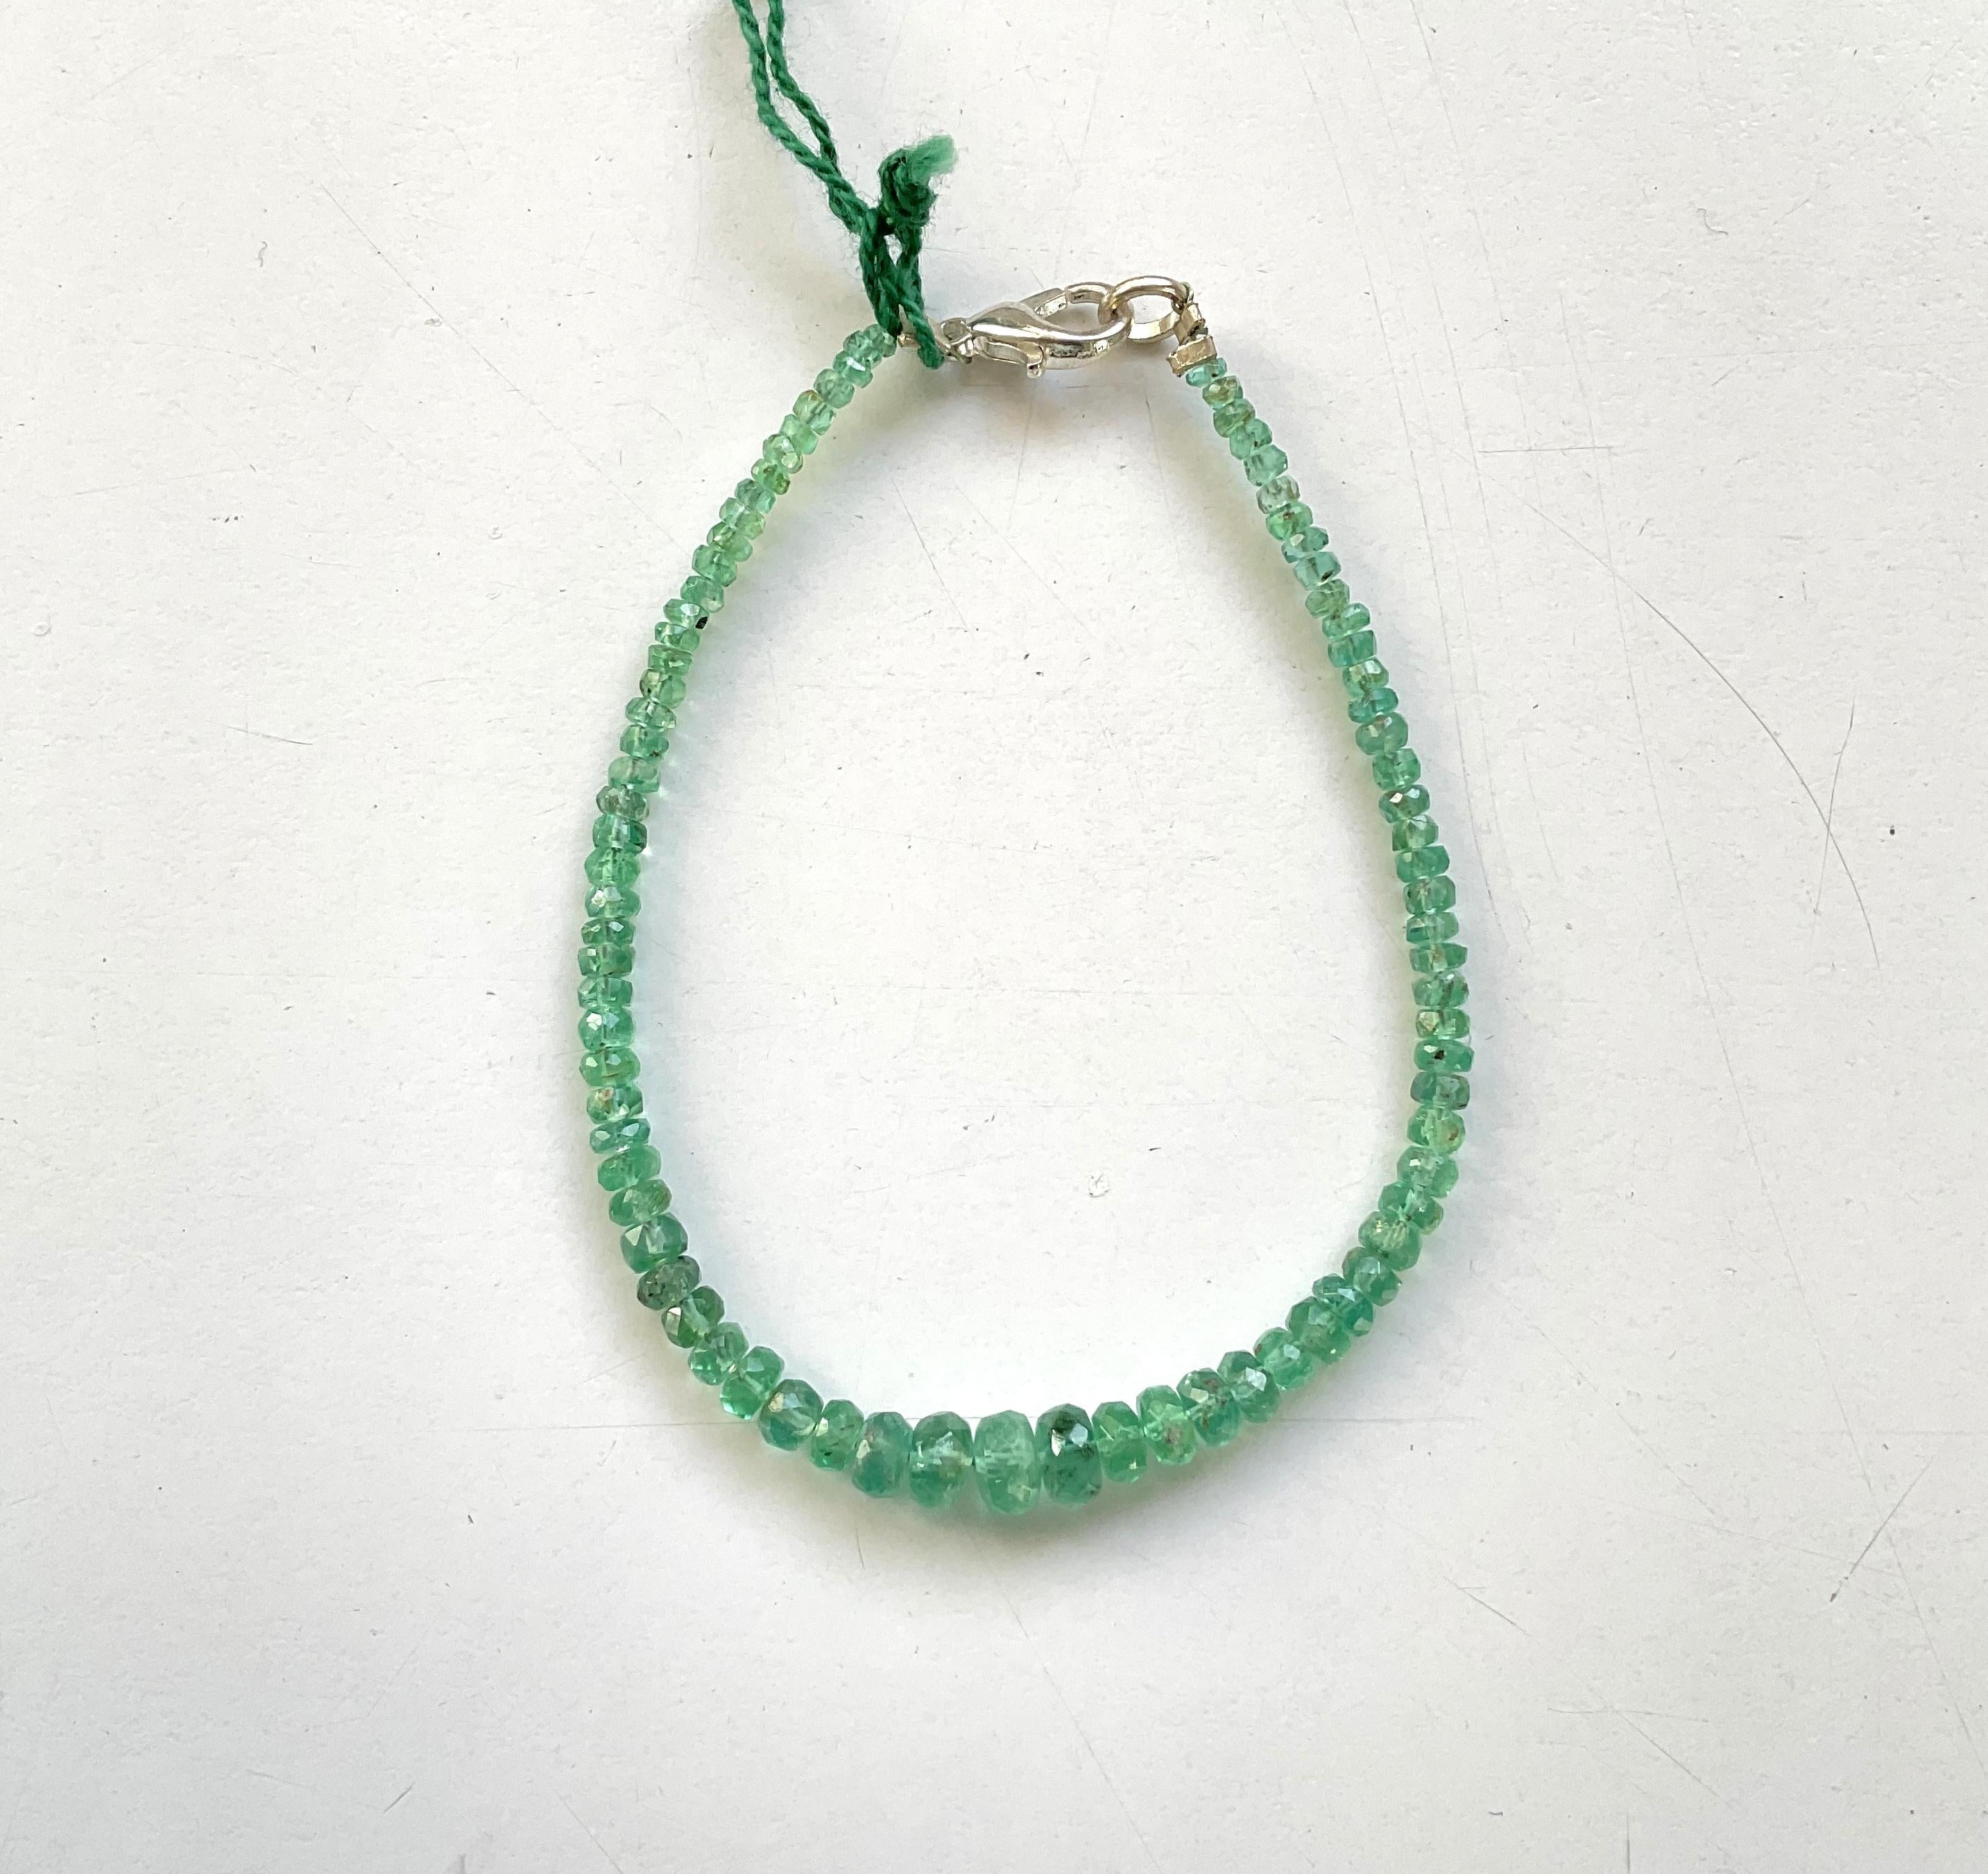 17,05 Karat Panjshir Smaragd Facettierte Perlen für feinen Schmuck Natürlicher Edelstein
Edelstein - Smaragd
Gewicht - 17,05 Karat
Form - Perlen
Größe - 2,5 bis 5,5 MM
Menge - 1 Zeile